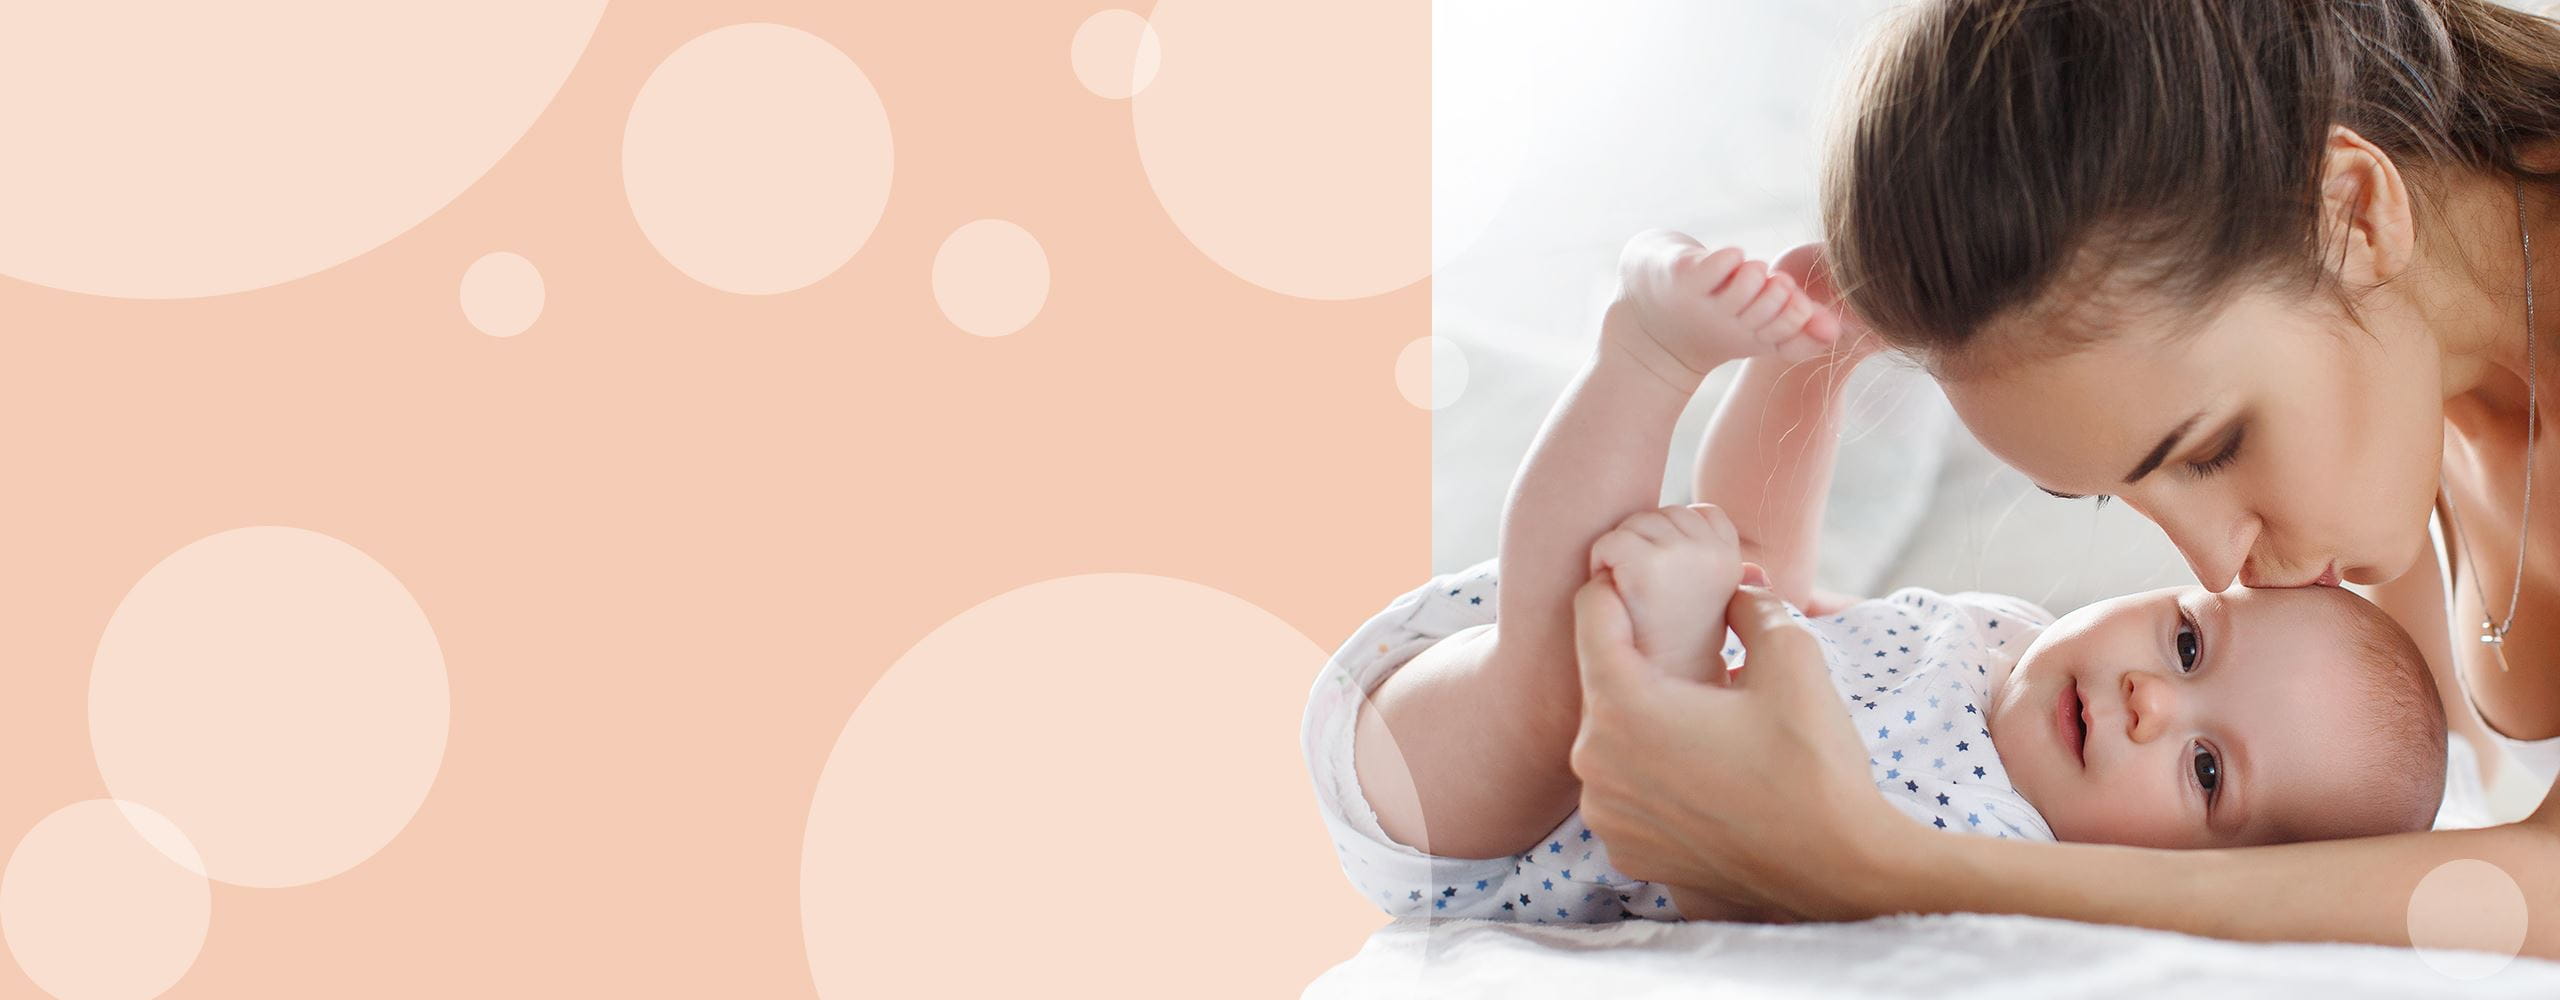 Sucha skóra u niemowlaka – skąd się bierze i jak o nią dbać? 